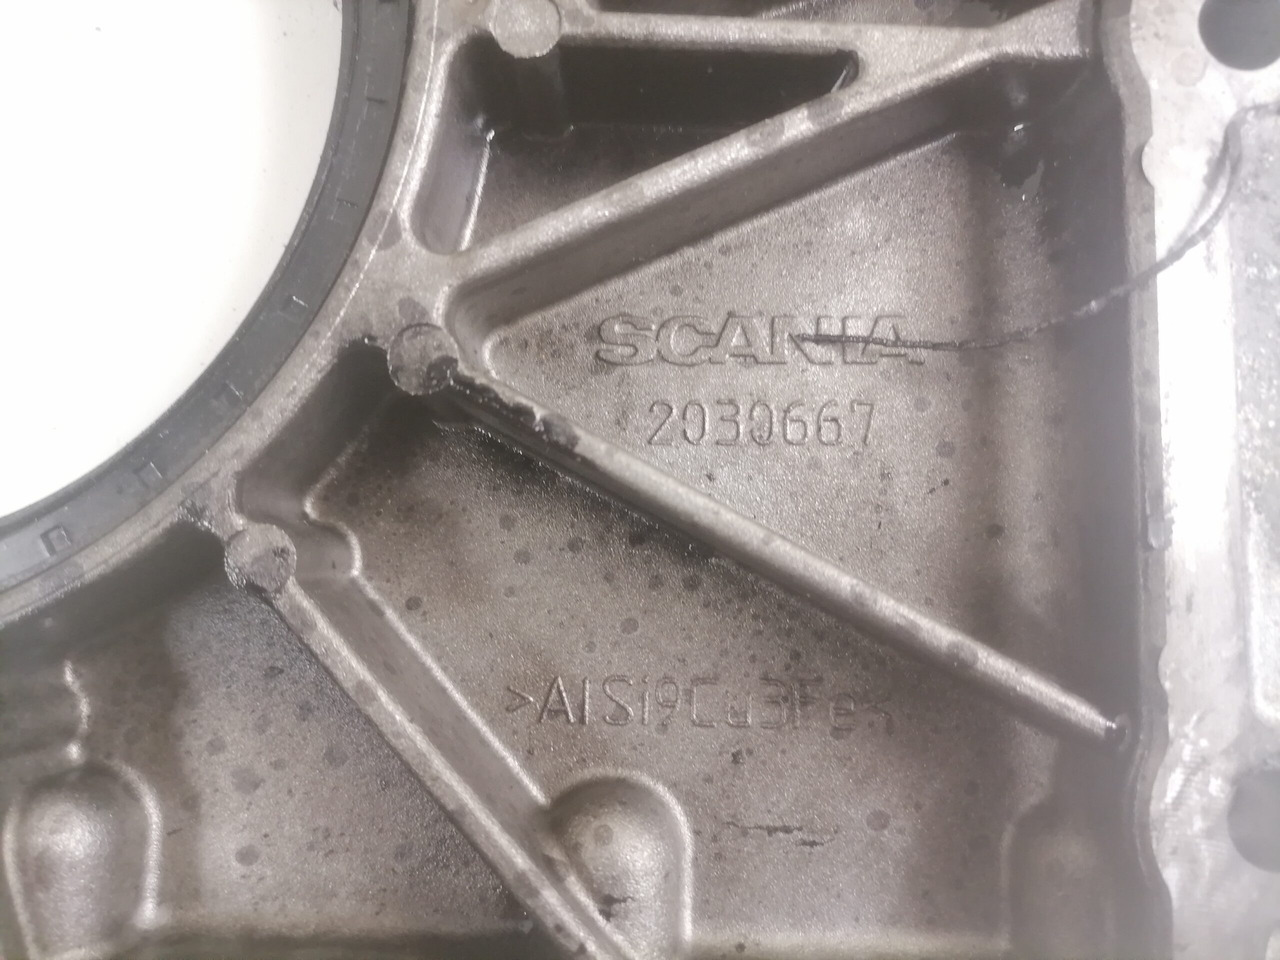 Moteur et pièces pour Camion Scania Engine front cover 2030667: photos 3